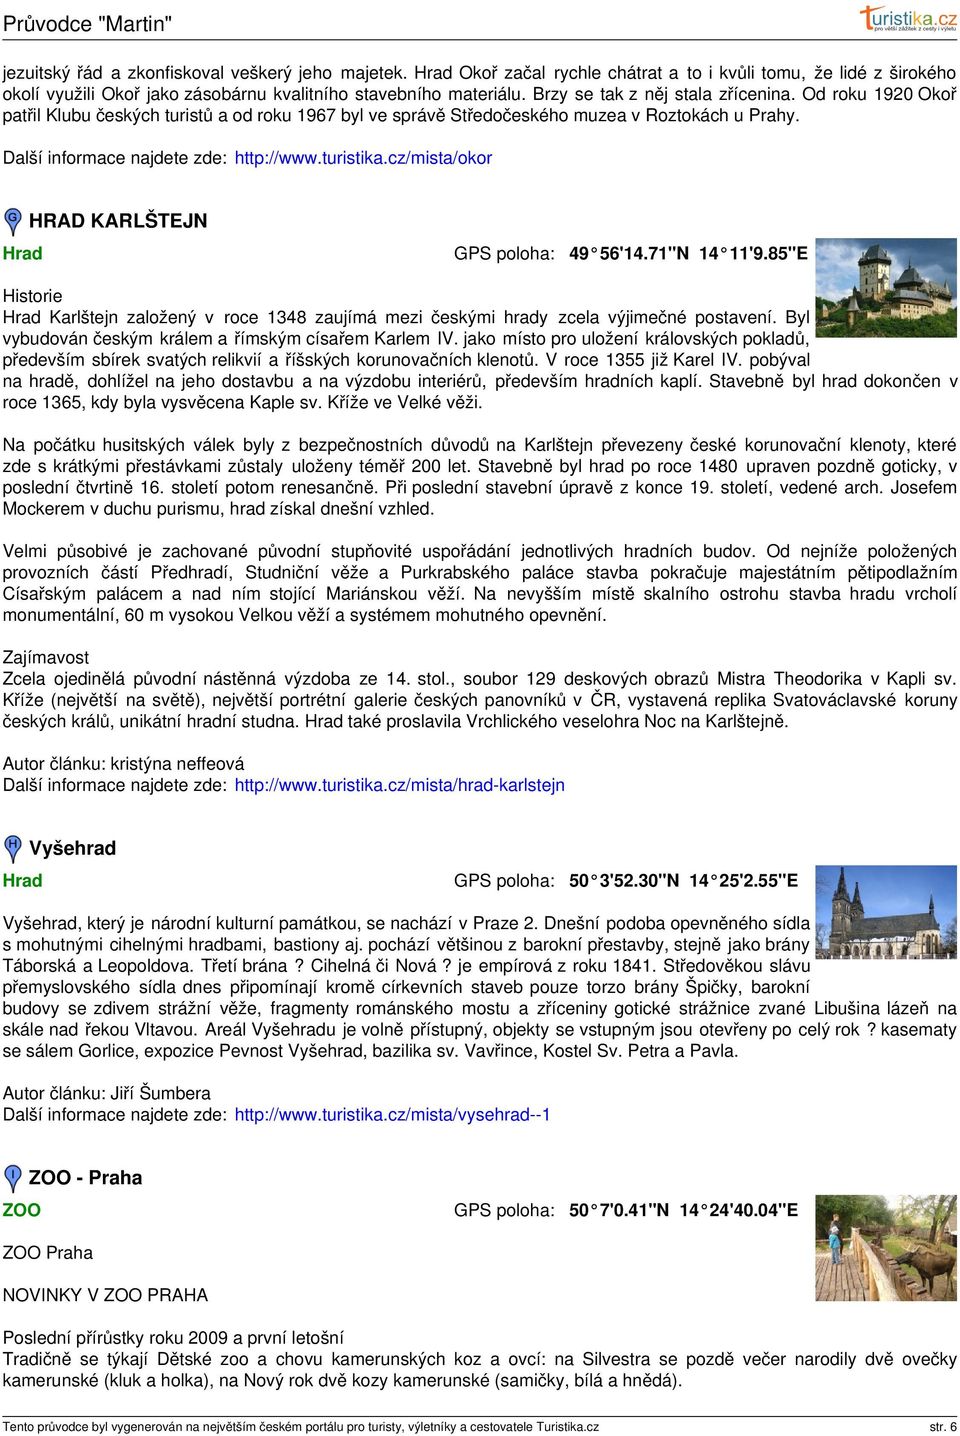 turistika.cz/mista/okor Hrad HRAD KARLŠTEJN 49 56'14.71"N 14 11'9.85"E Historie Hrad Karlštejn založený v roce 1348 zaujímá mezi českými hrady zcela výjimečné postavení.